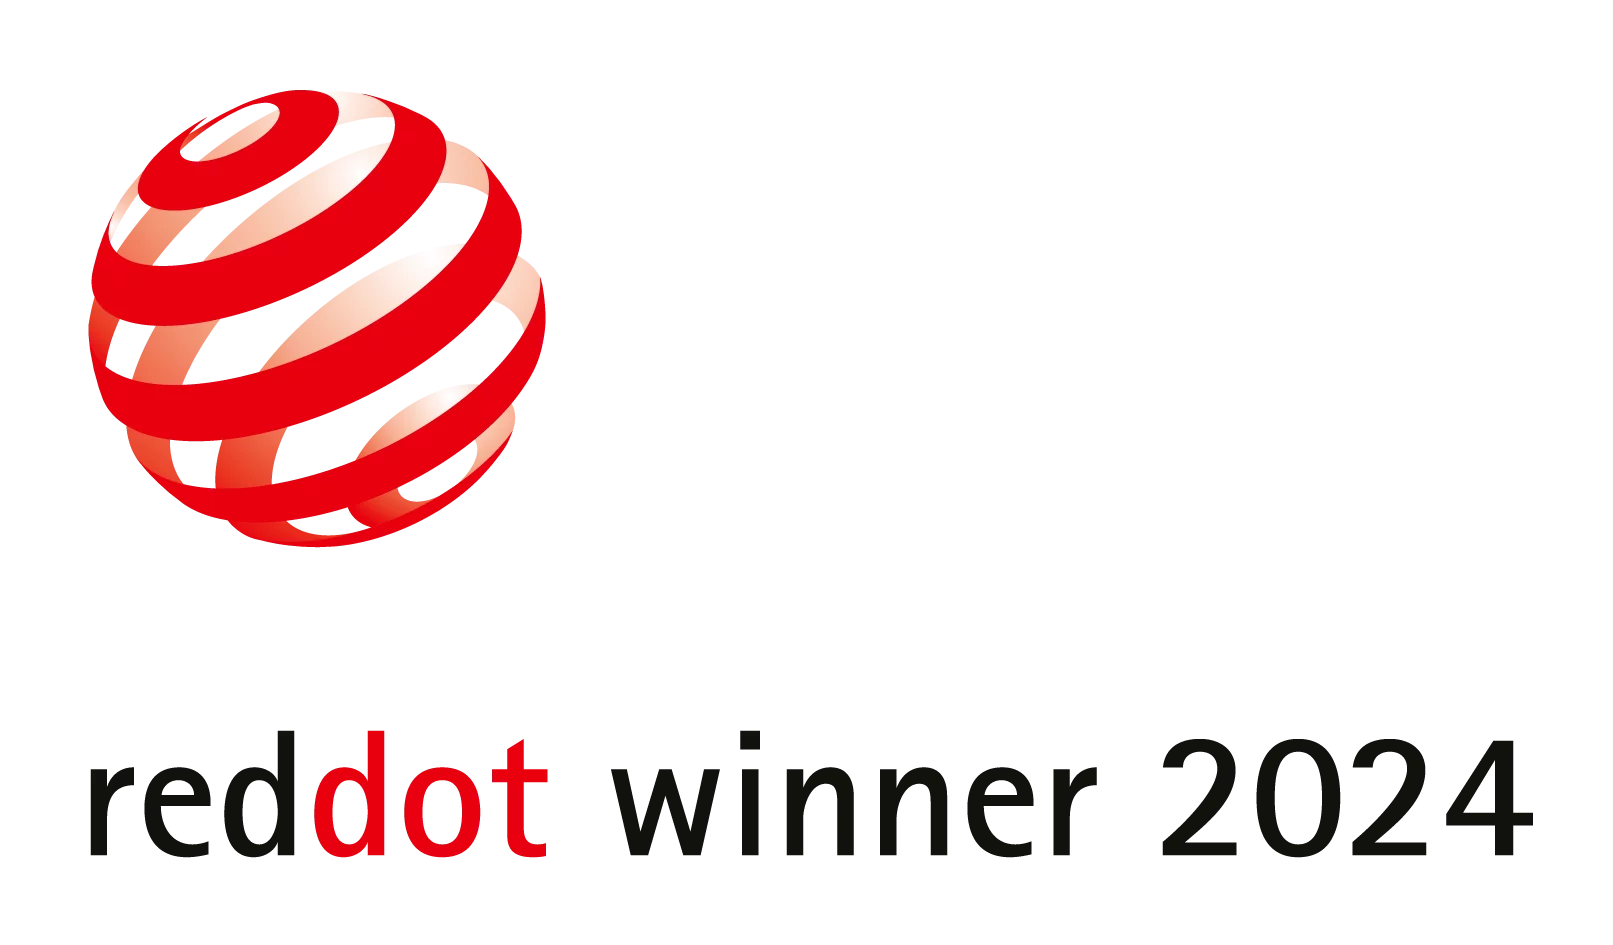 Red Dot Winner Award